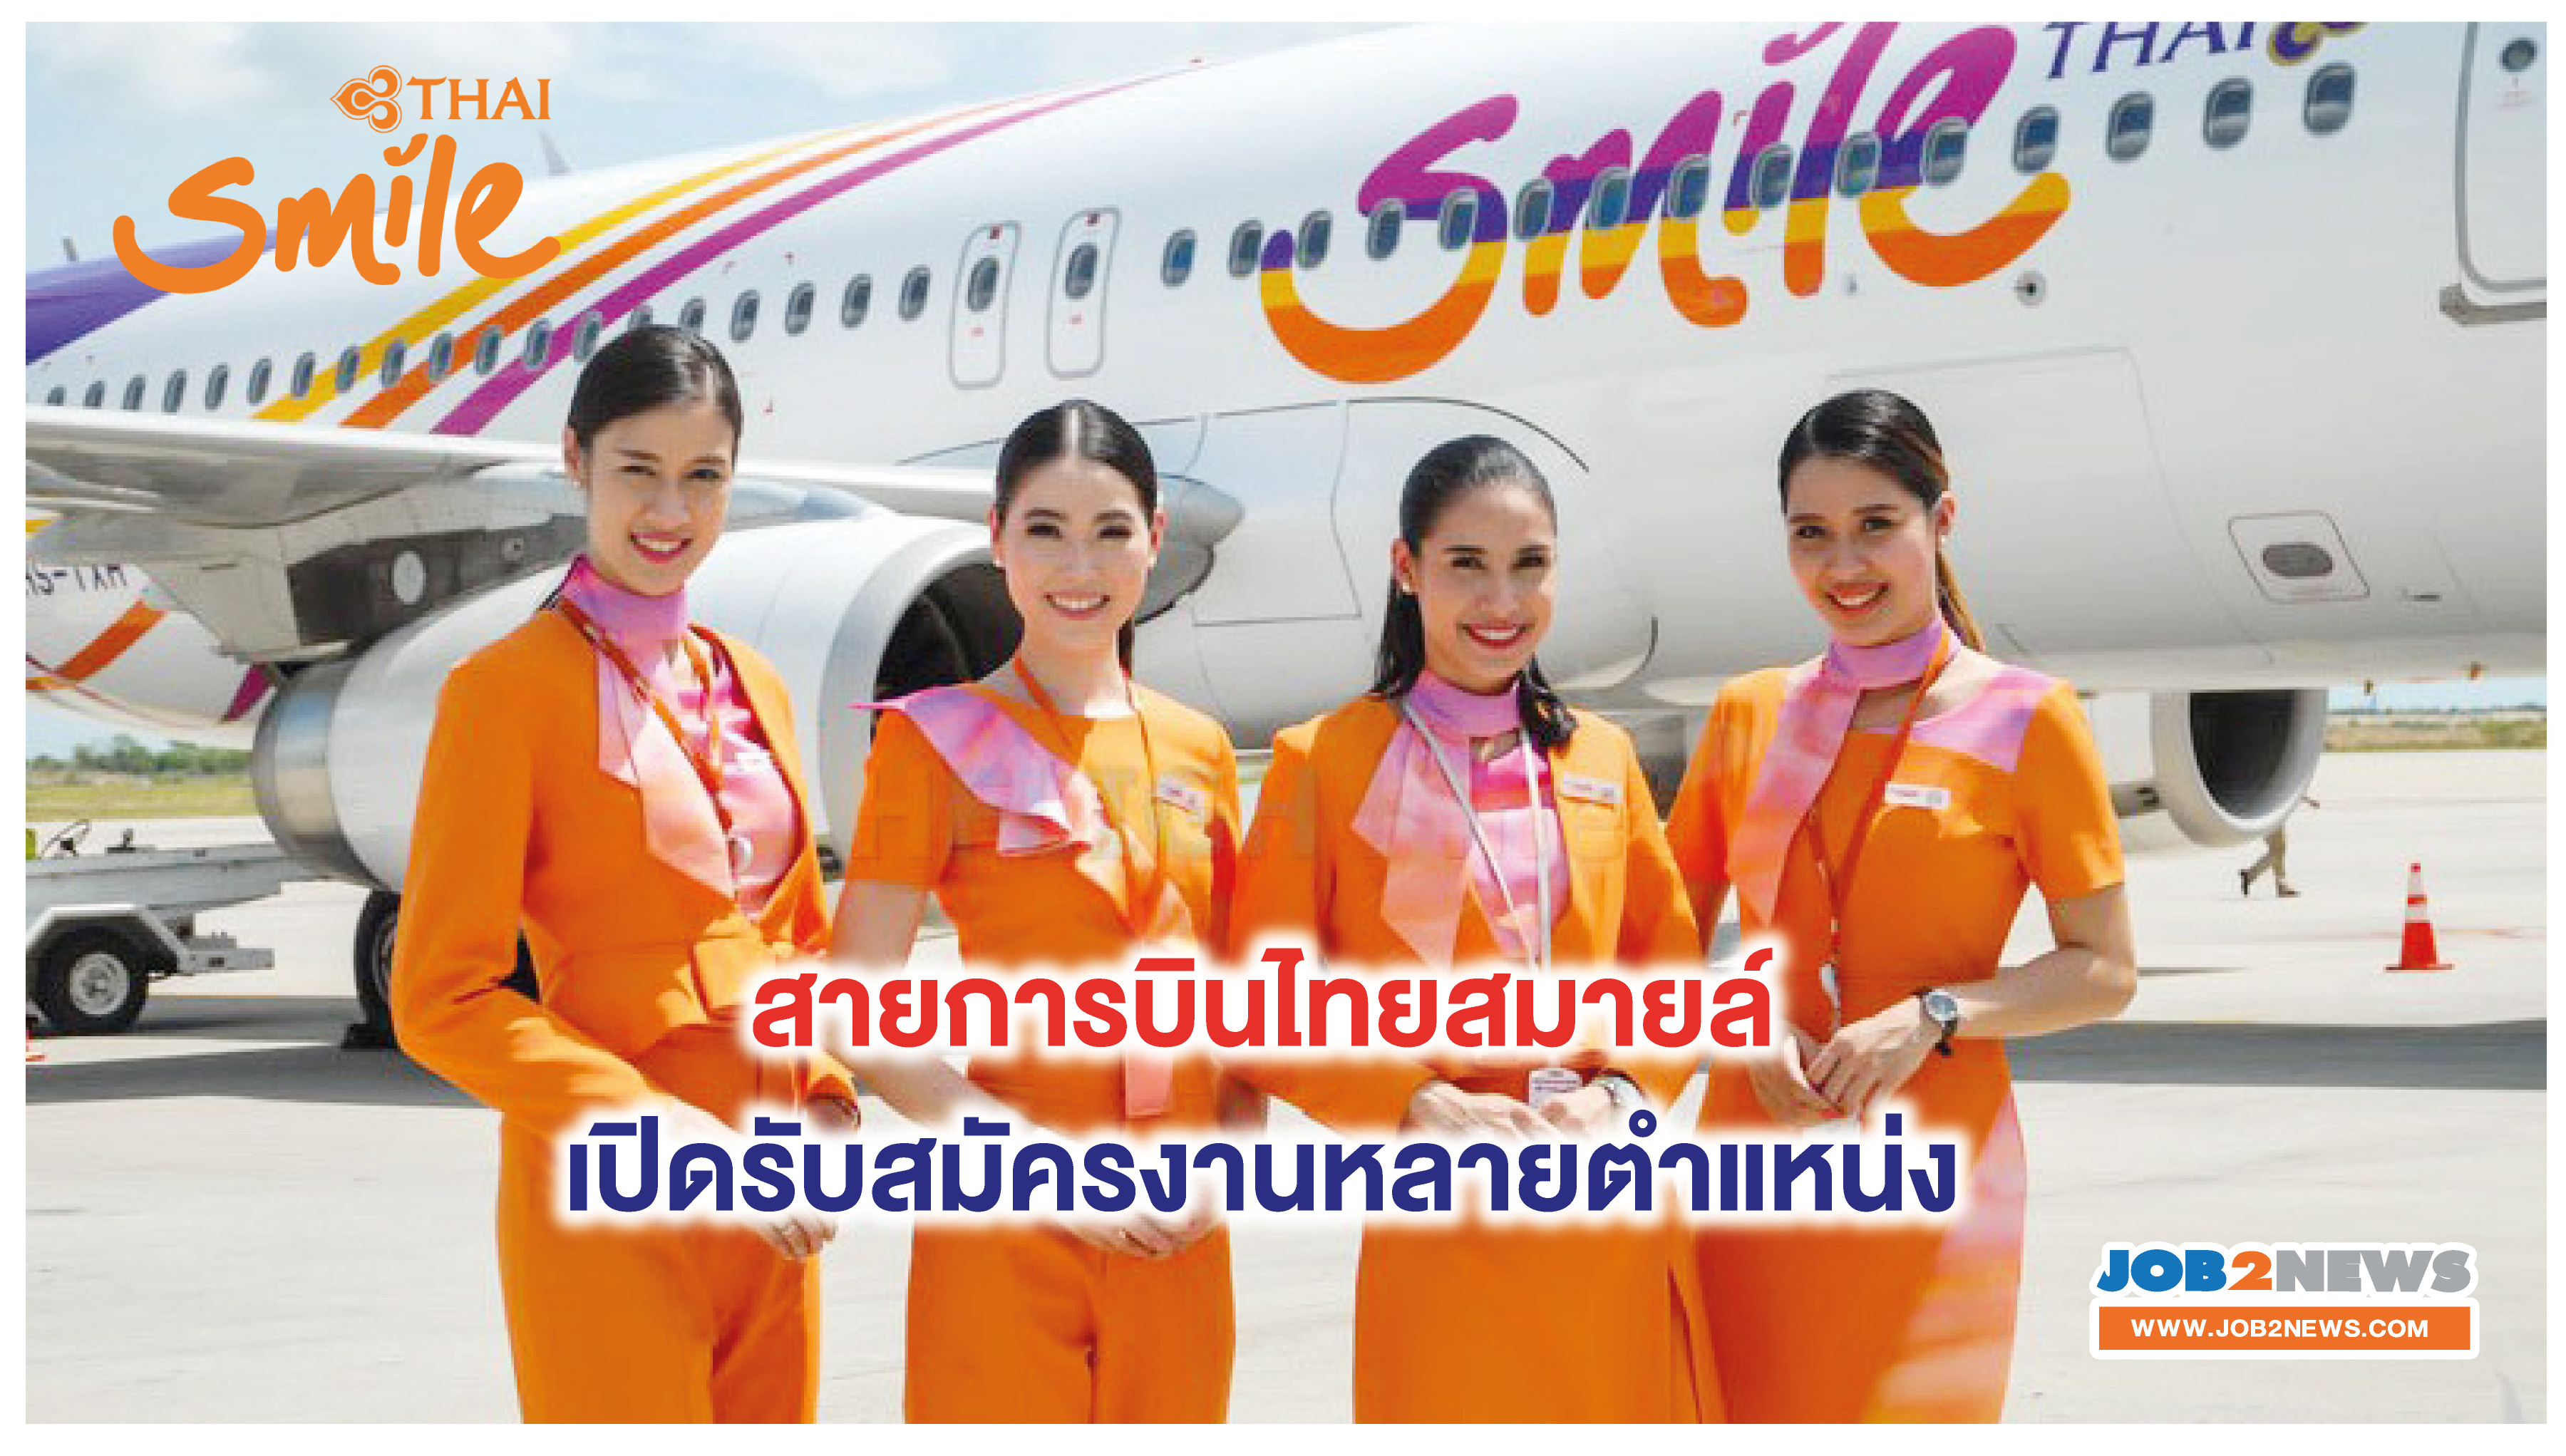 สายการบินไทยสมายล์ (Thai Smile) เปิดรับสมัครงานหลายตำแหน่ง